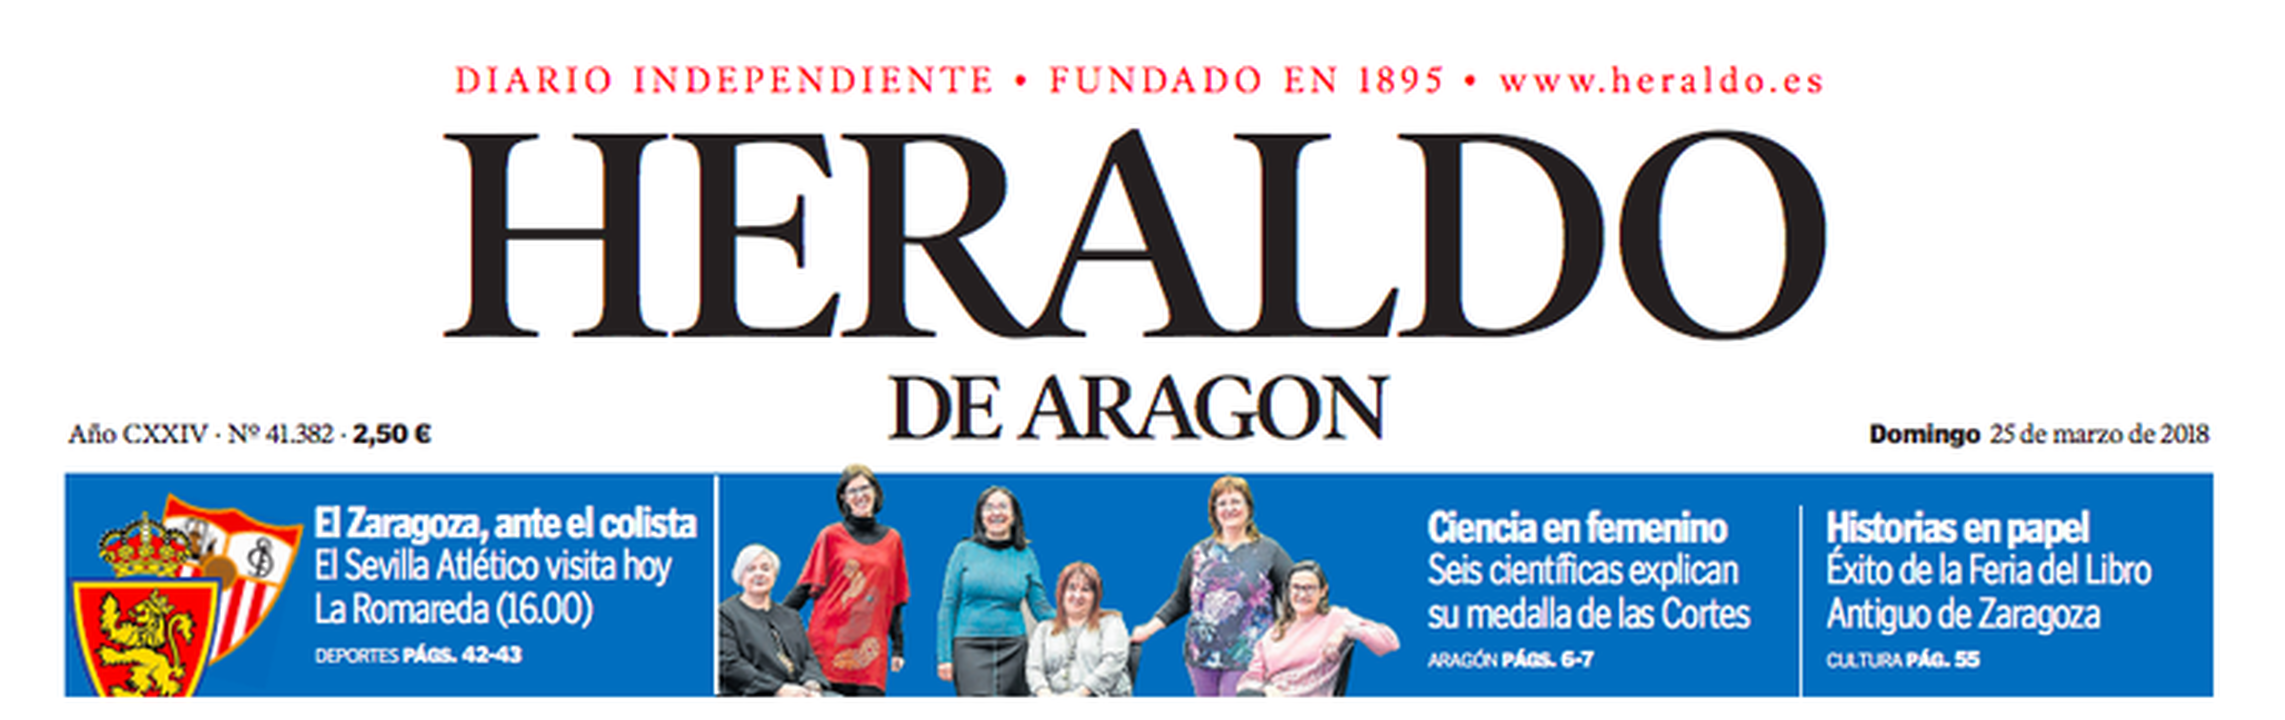 Heraldo de Aragon